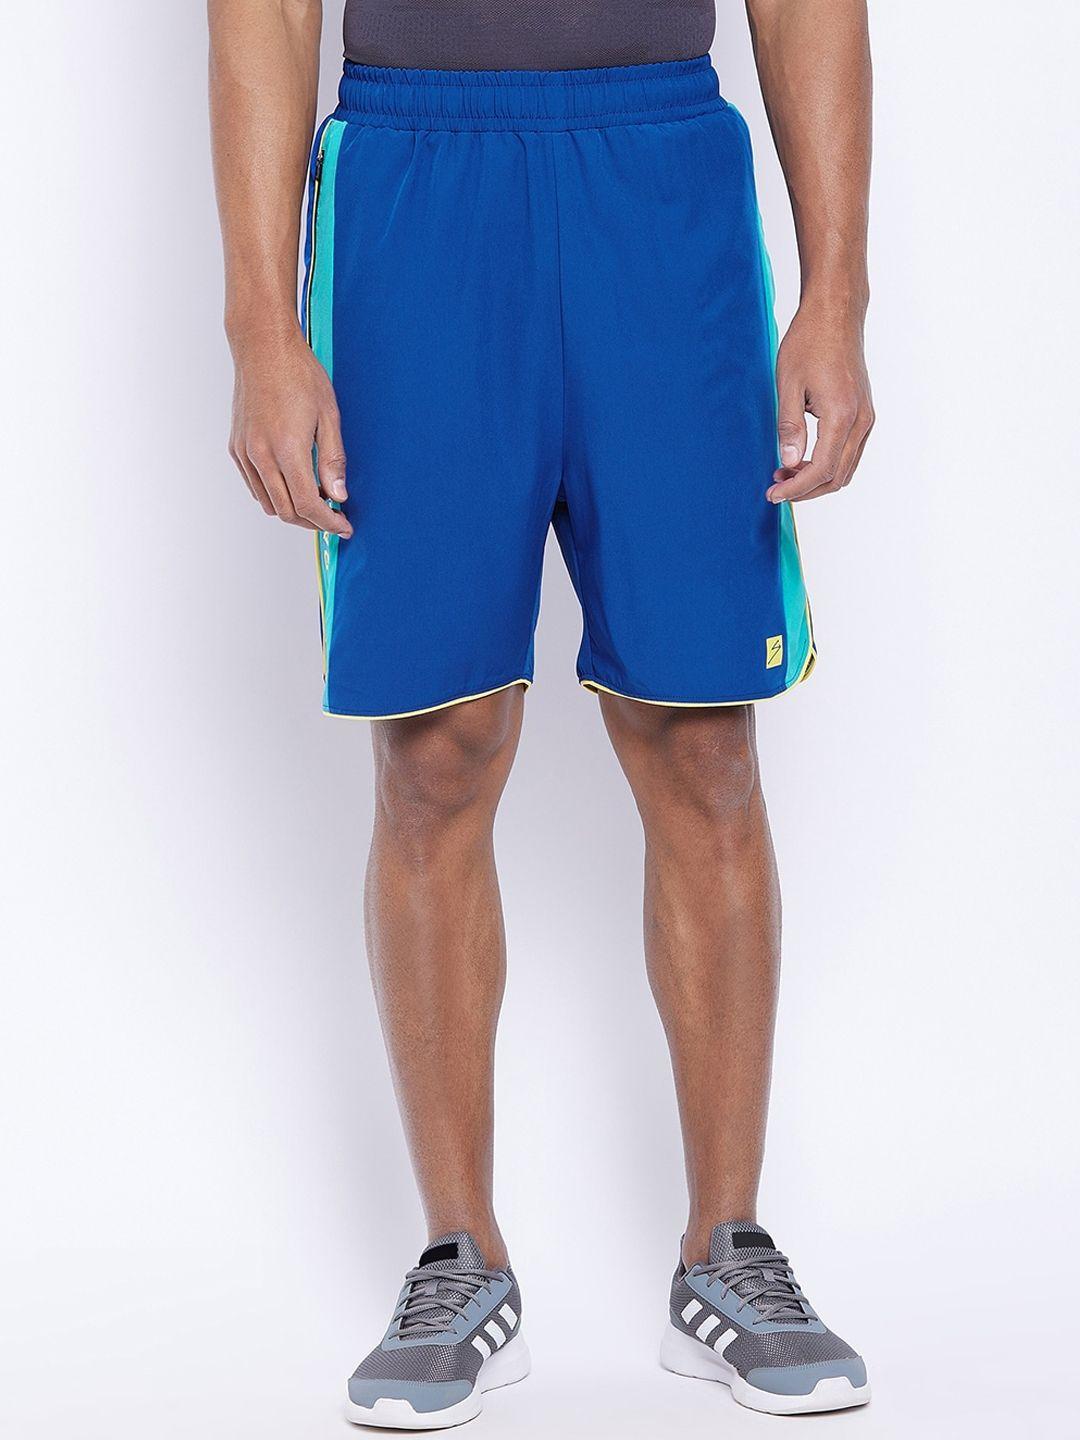 unpar-men-blue-outdoor-sports-shorts